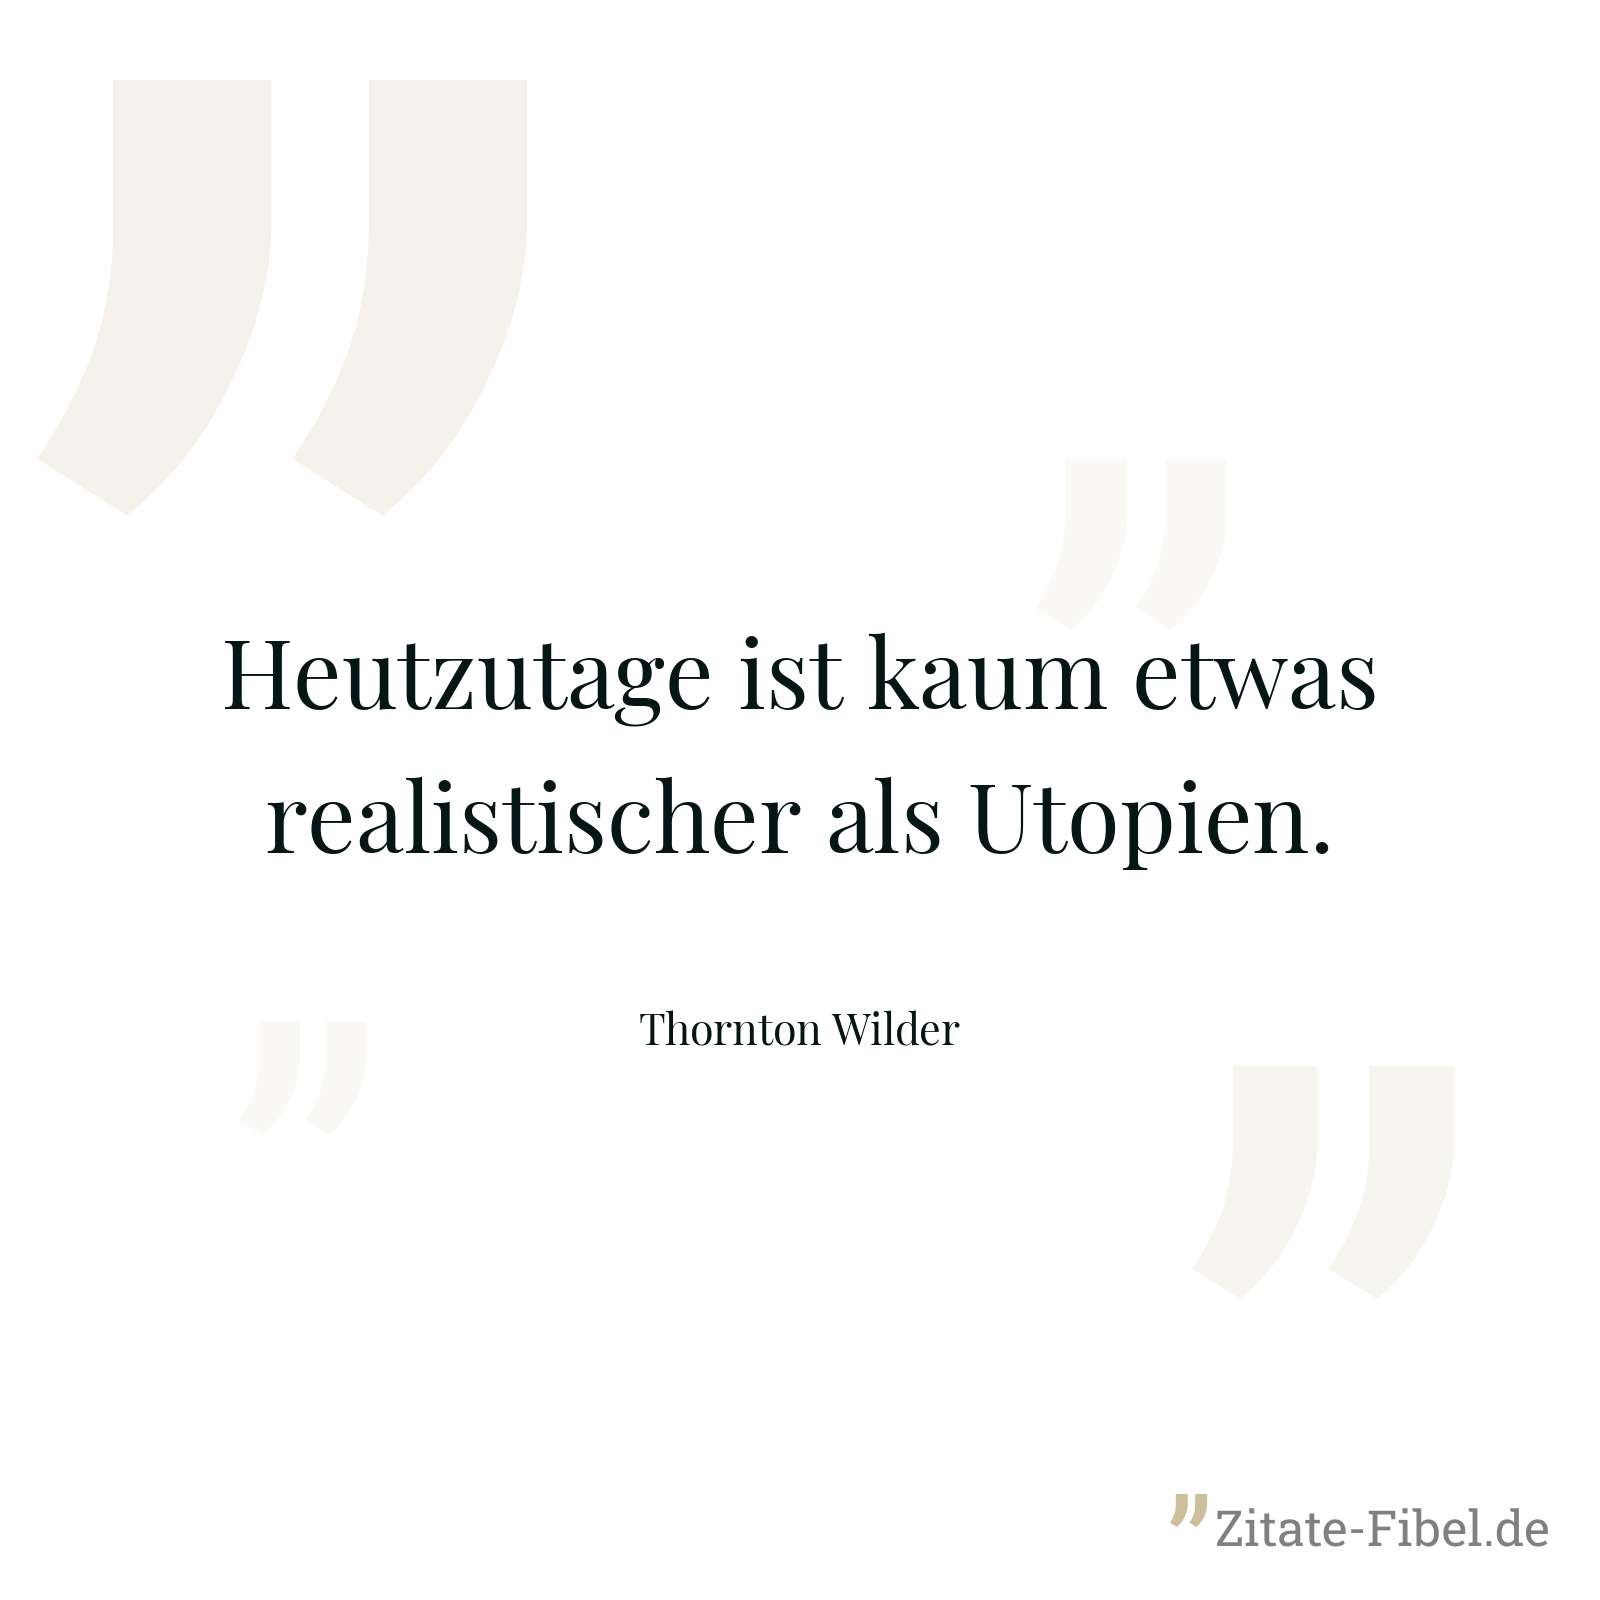 Heutzutage ist kaum etwas realistischer als Utopien. - Thornton Wilder